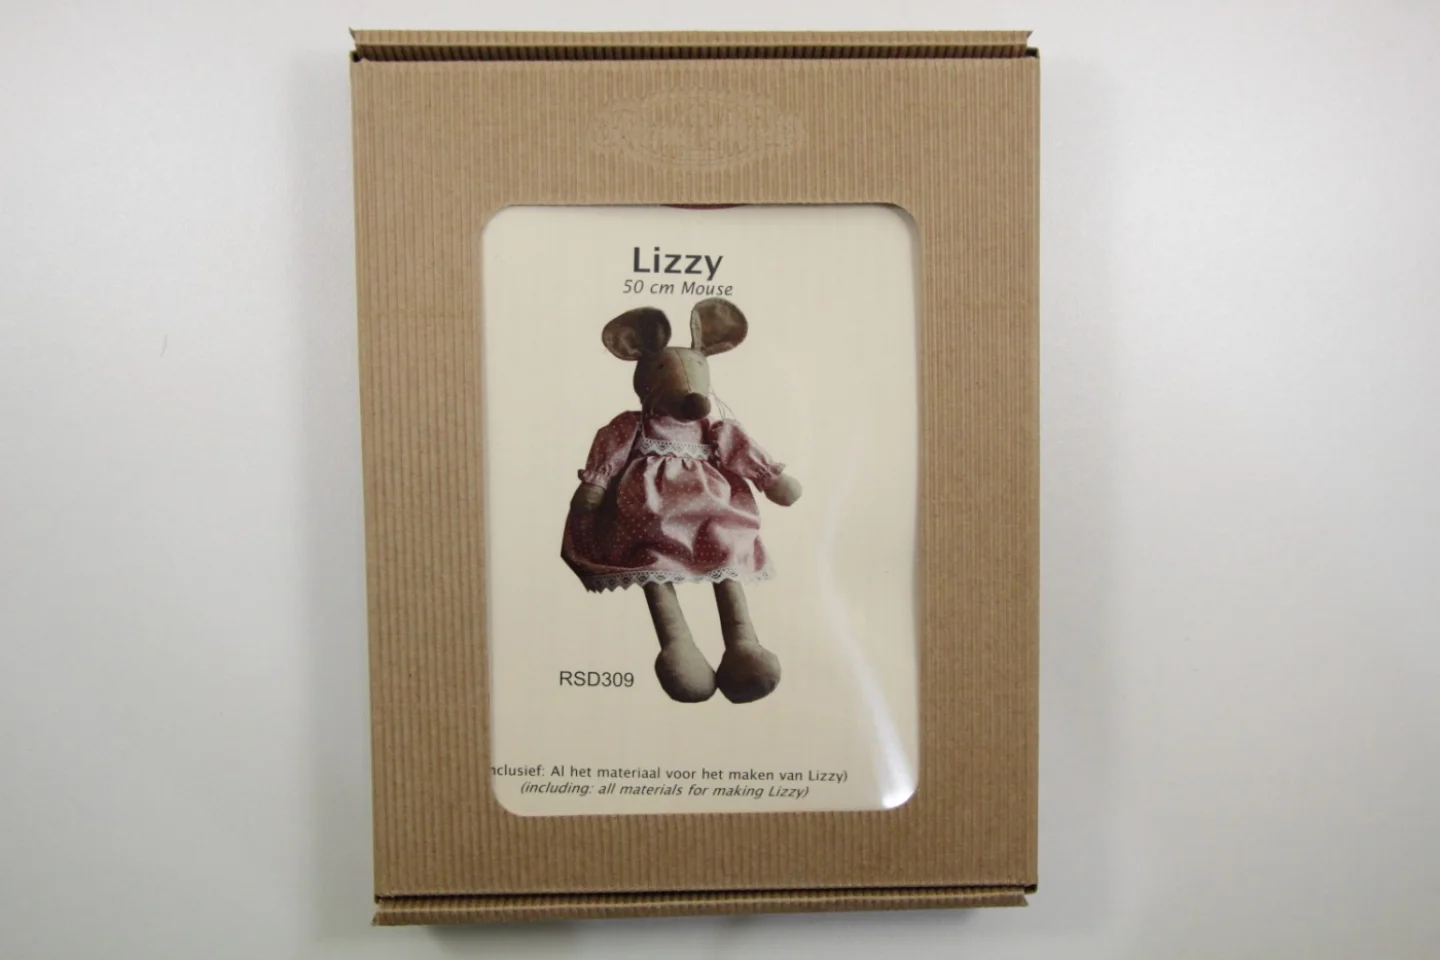 Pakketje-Lizzy-meisjesmuis Lizzy-50 cm g.